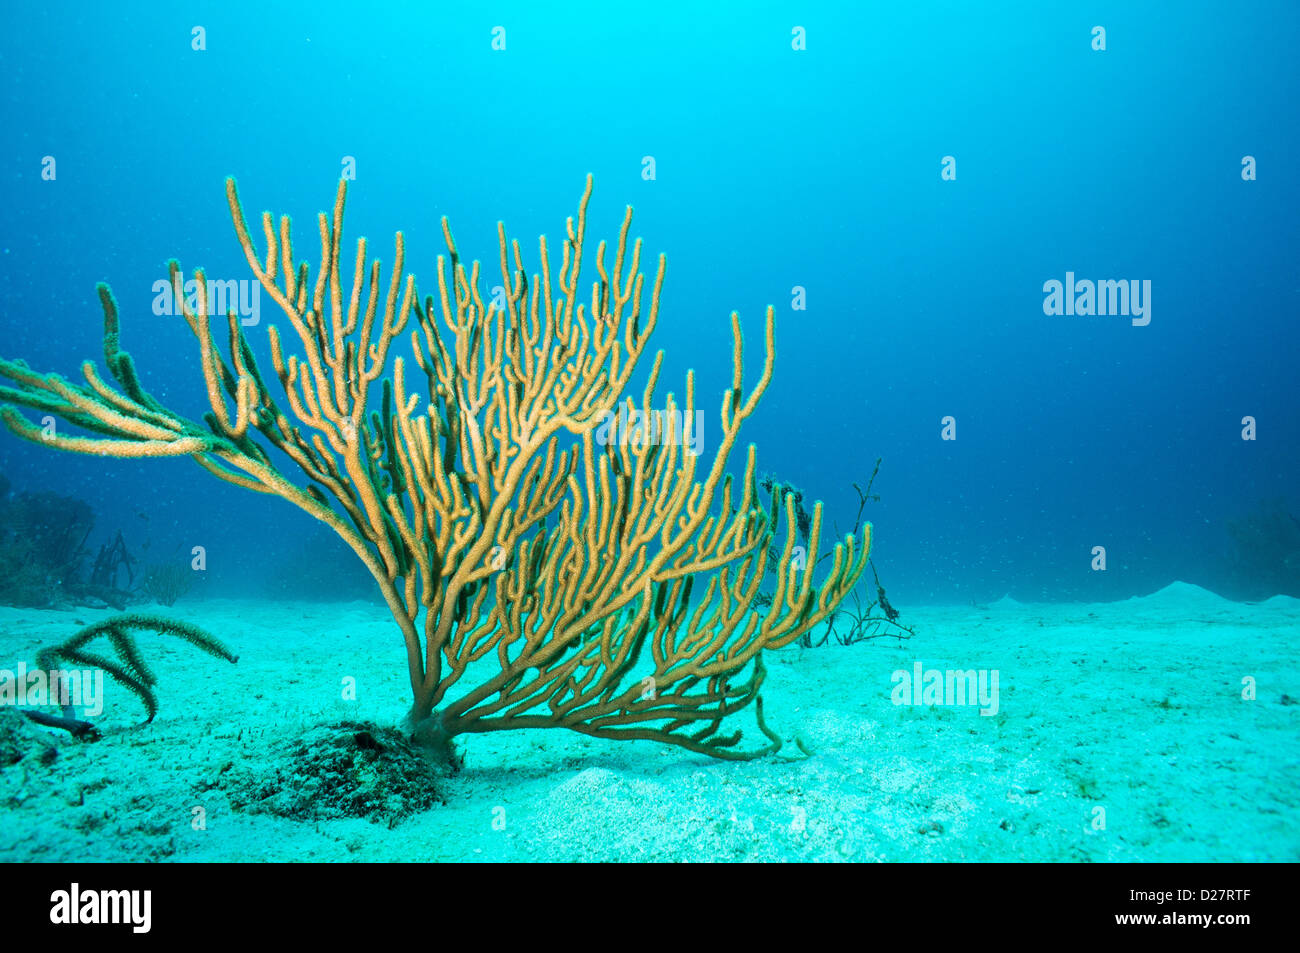 Submarino de corales blandos, Bayahibe, República Dominicana Foto de stock